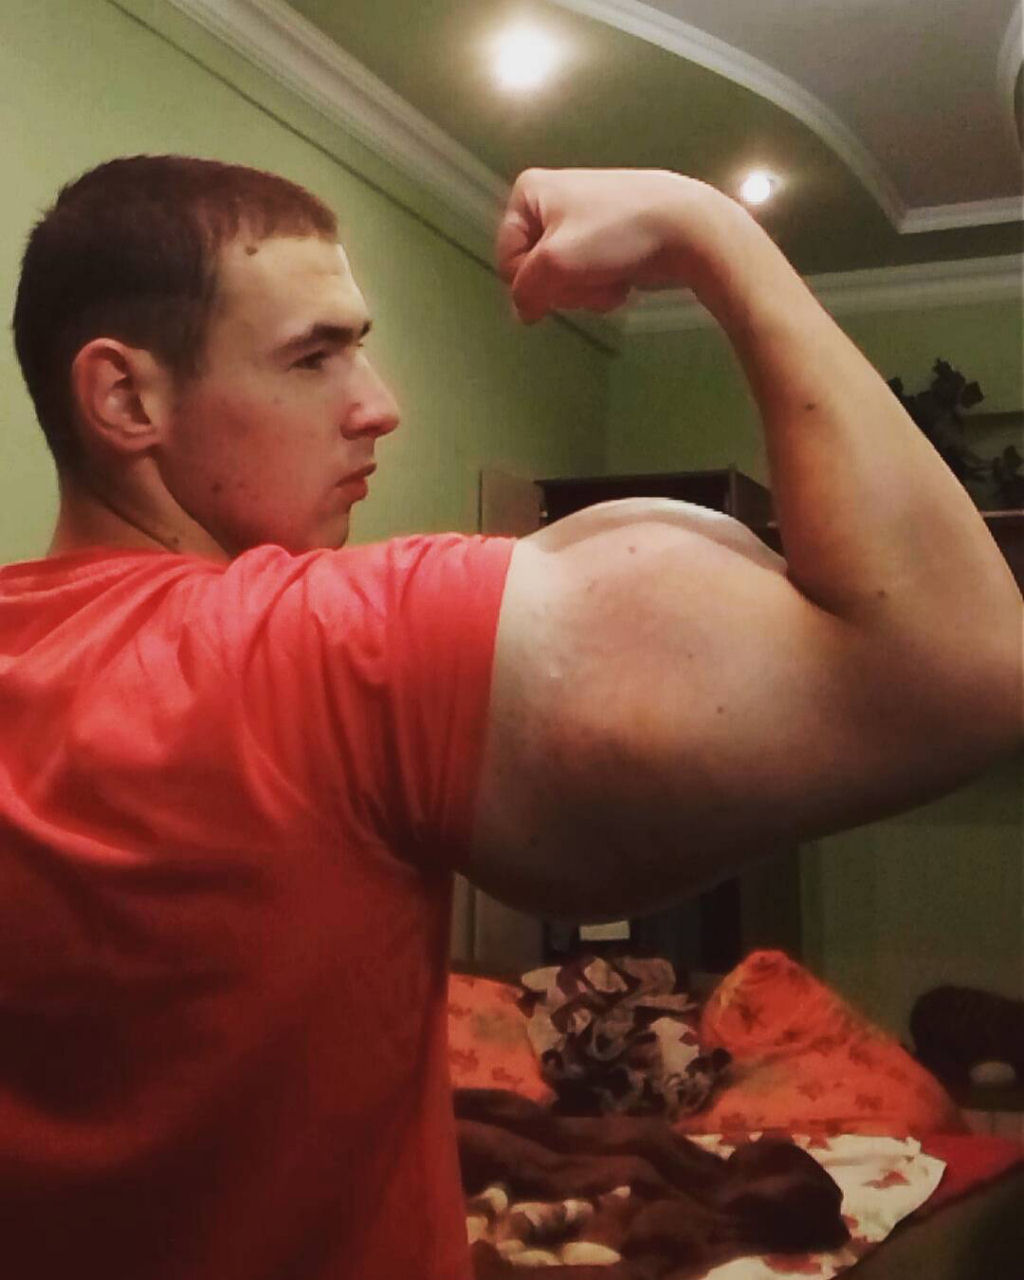 Popeye russo: o jovem fisiculturista que injetou leo nos braos 09